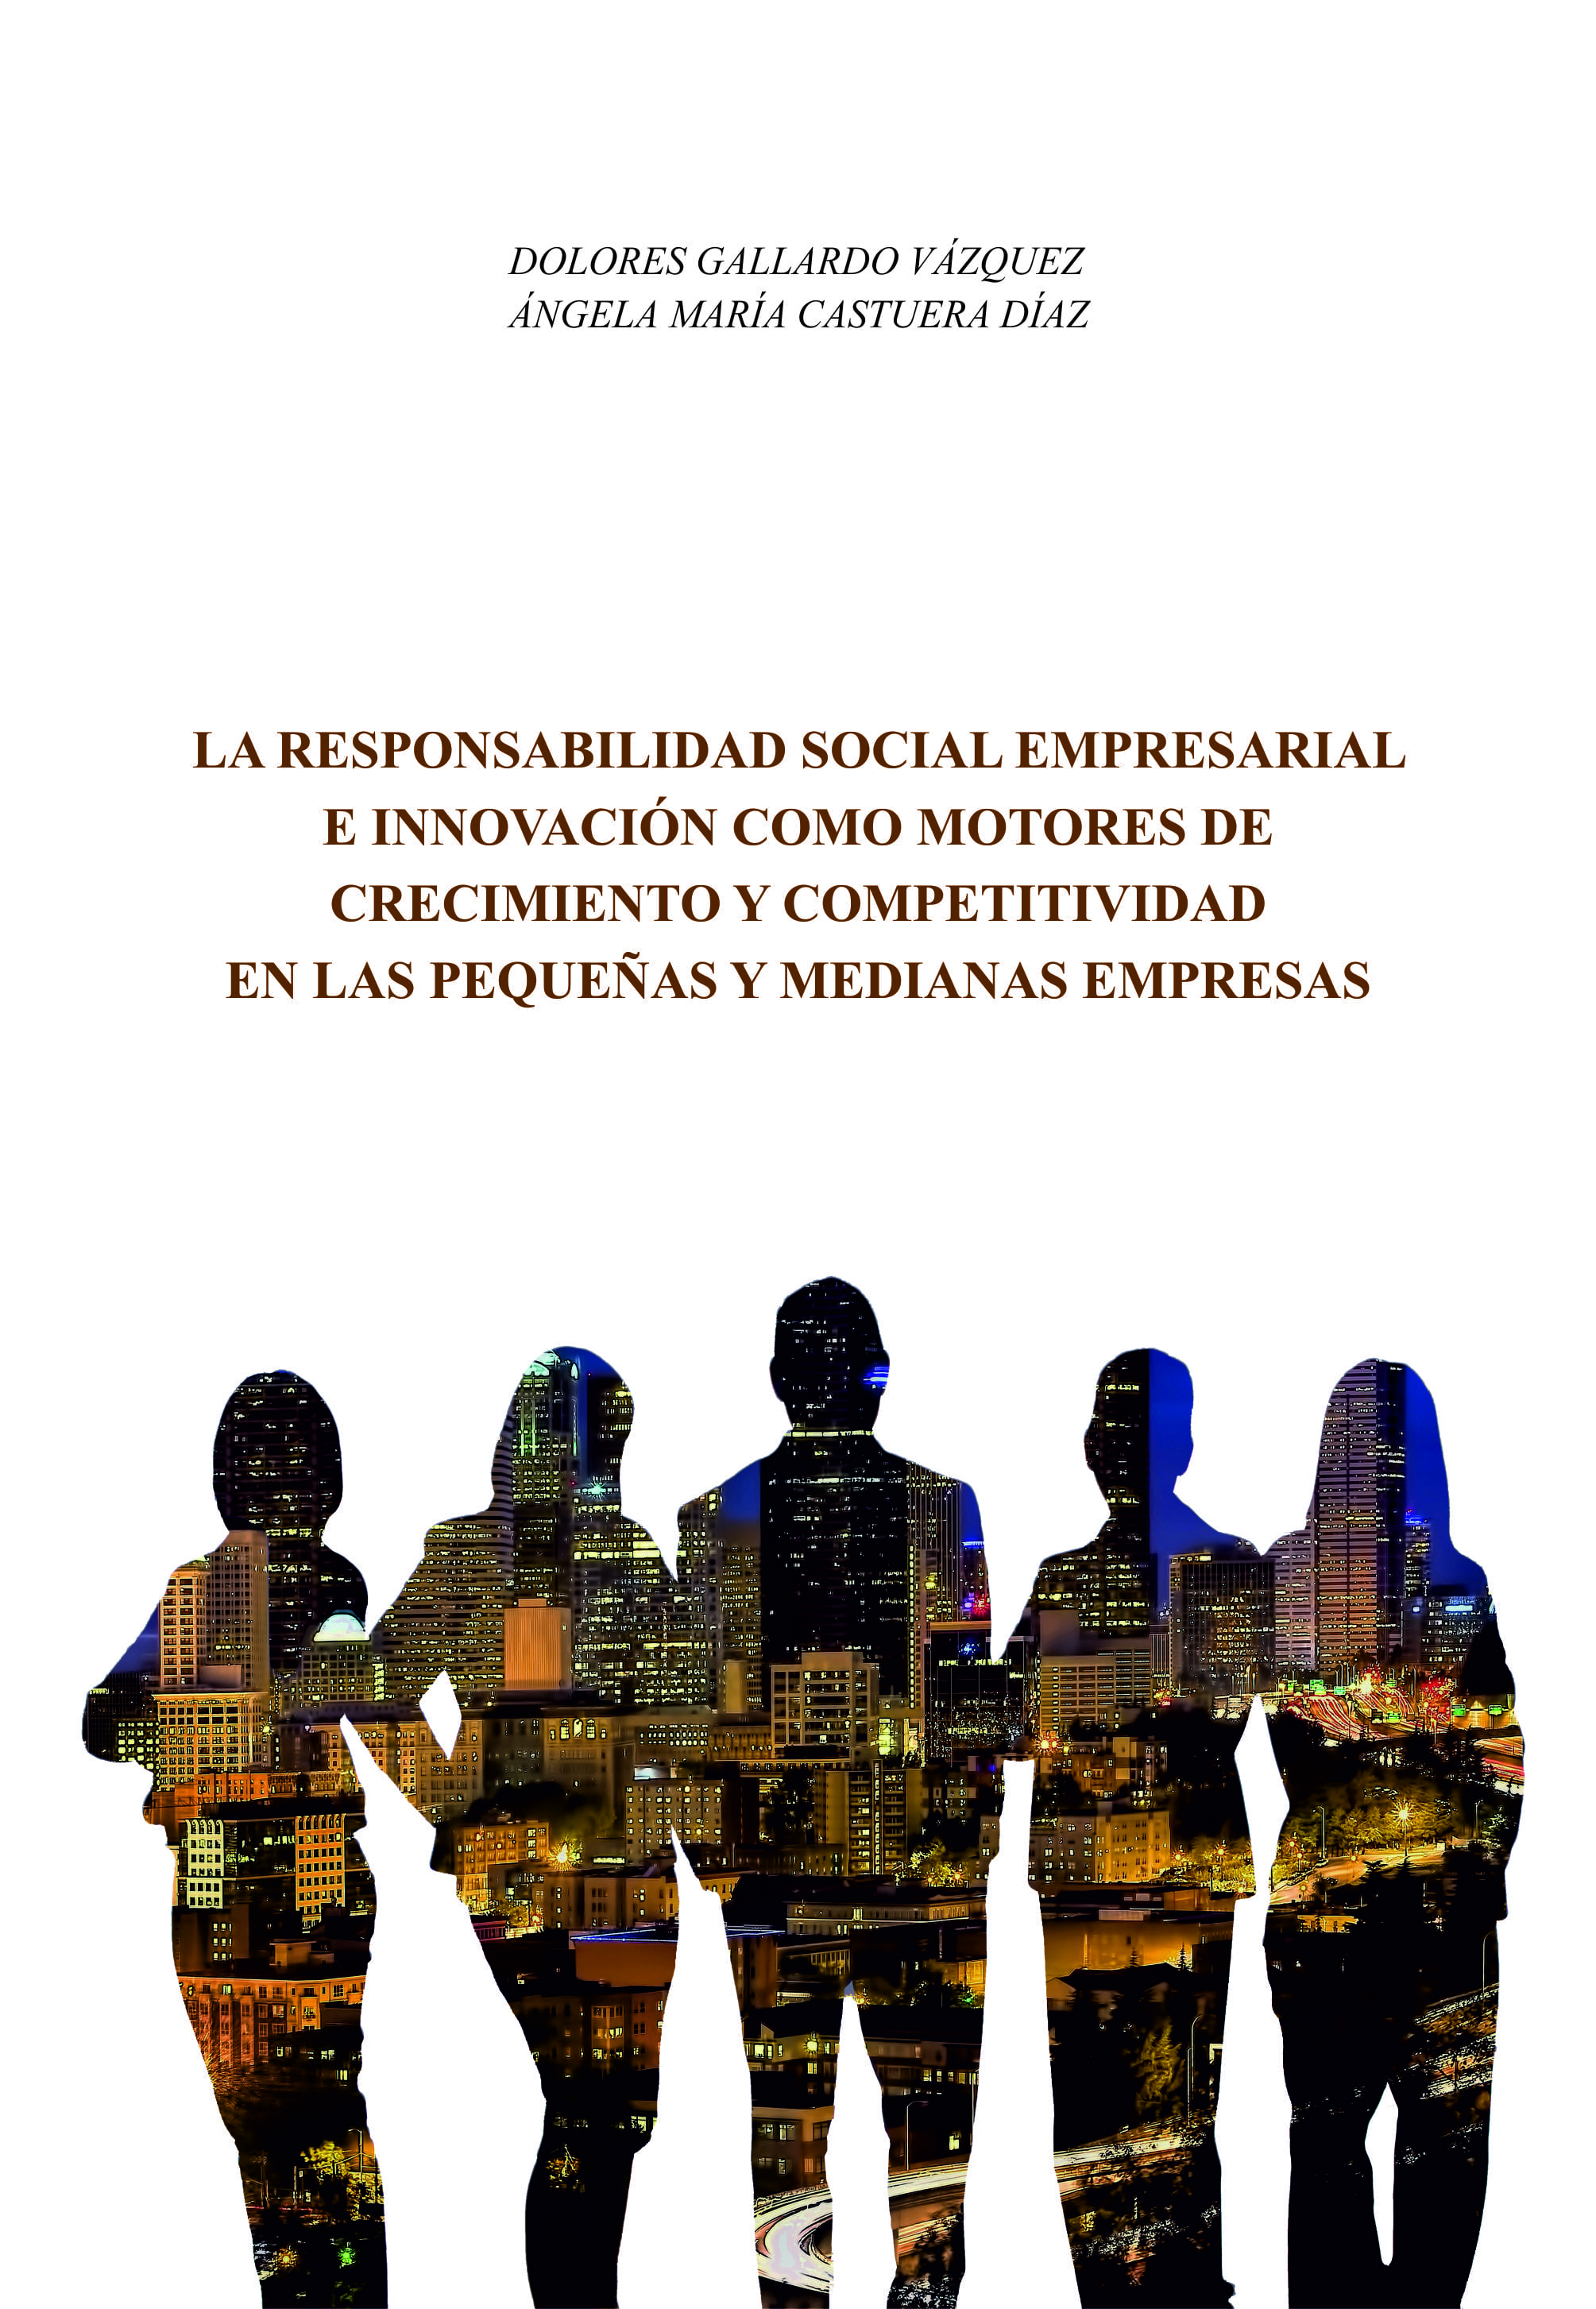 La responsabilidad social empresarial e innovación como motores de crecimiento y competitividad en las pequeñas y medianas empresas